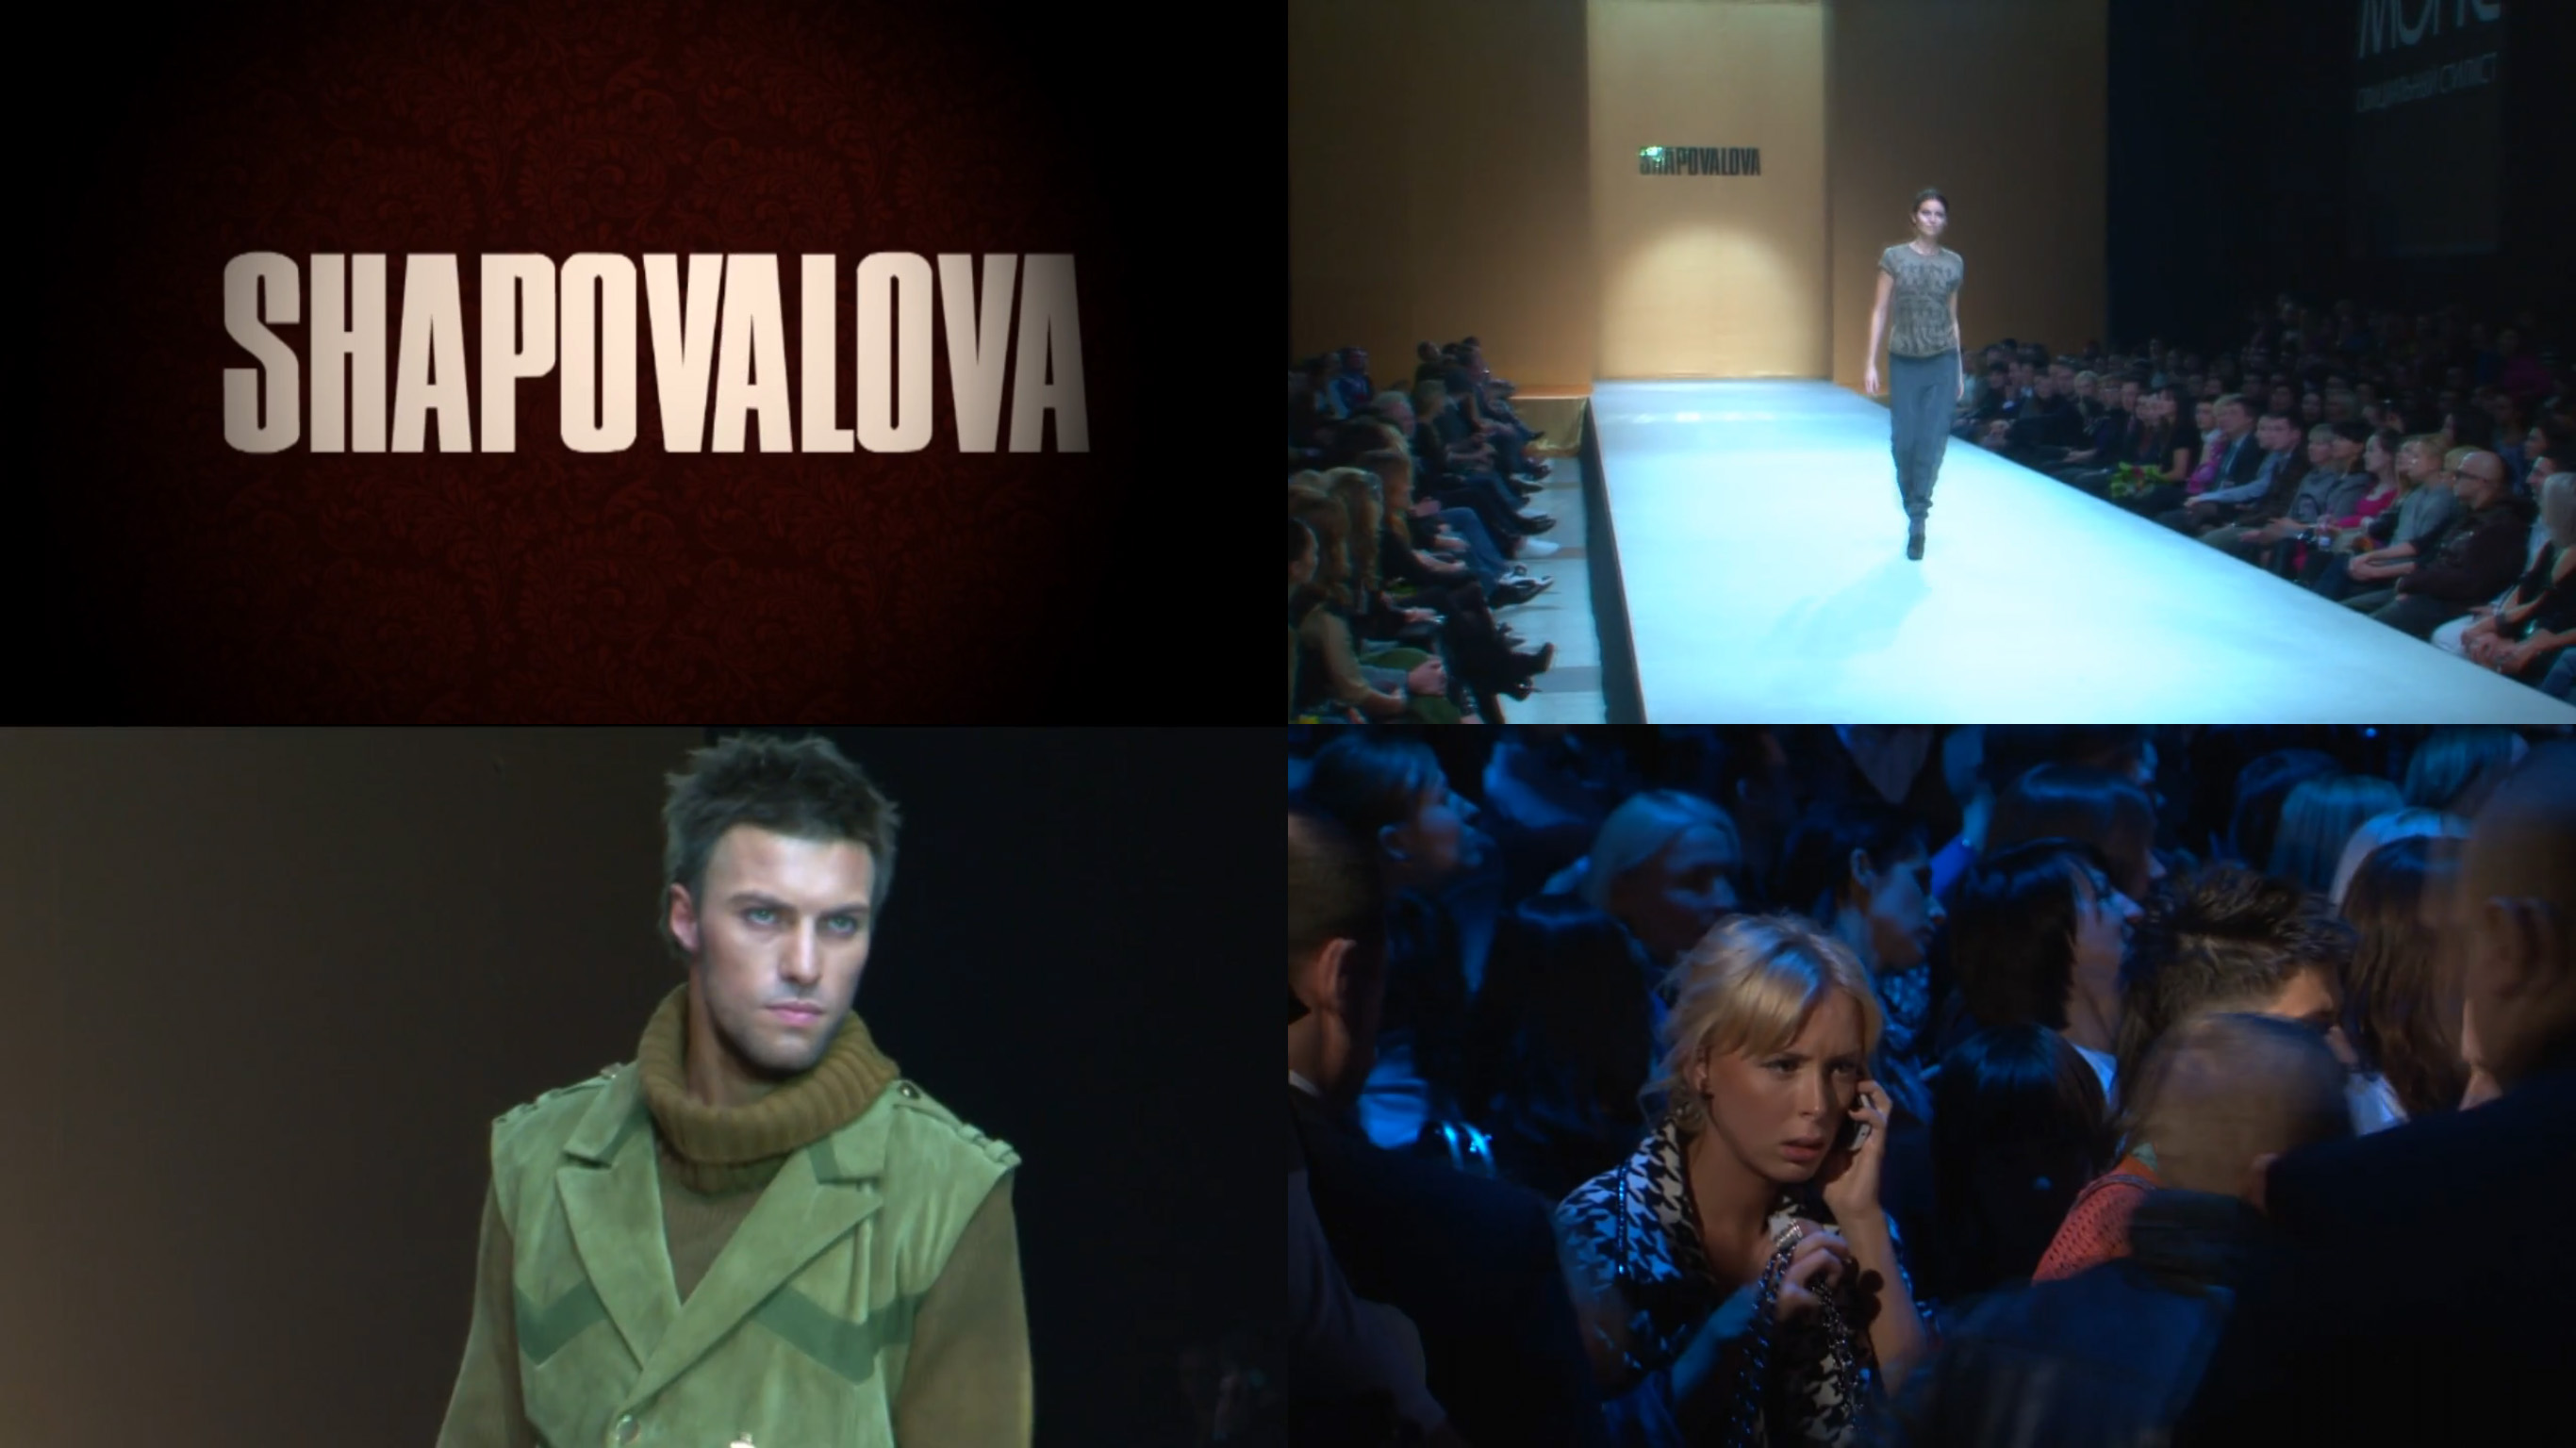 Промо-ролик с показа модельера и дизайнера Антонины Шаповаловой.